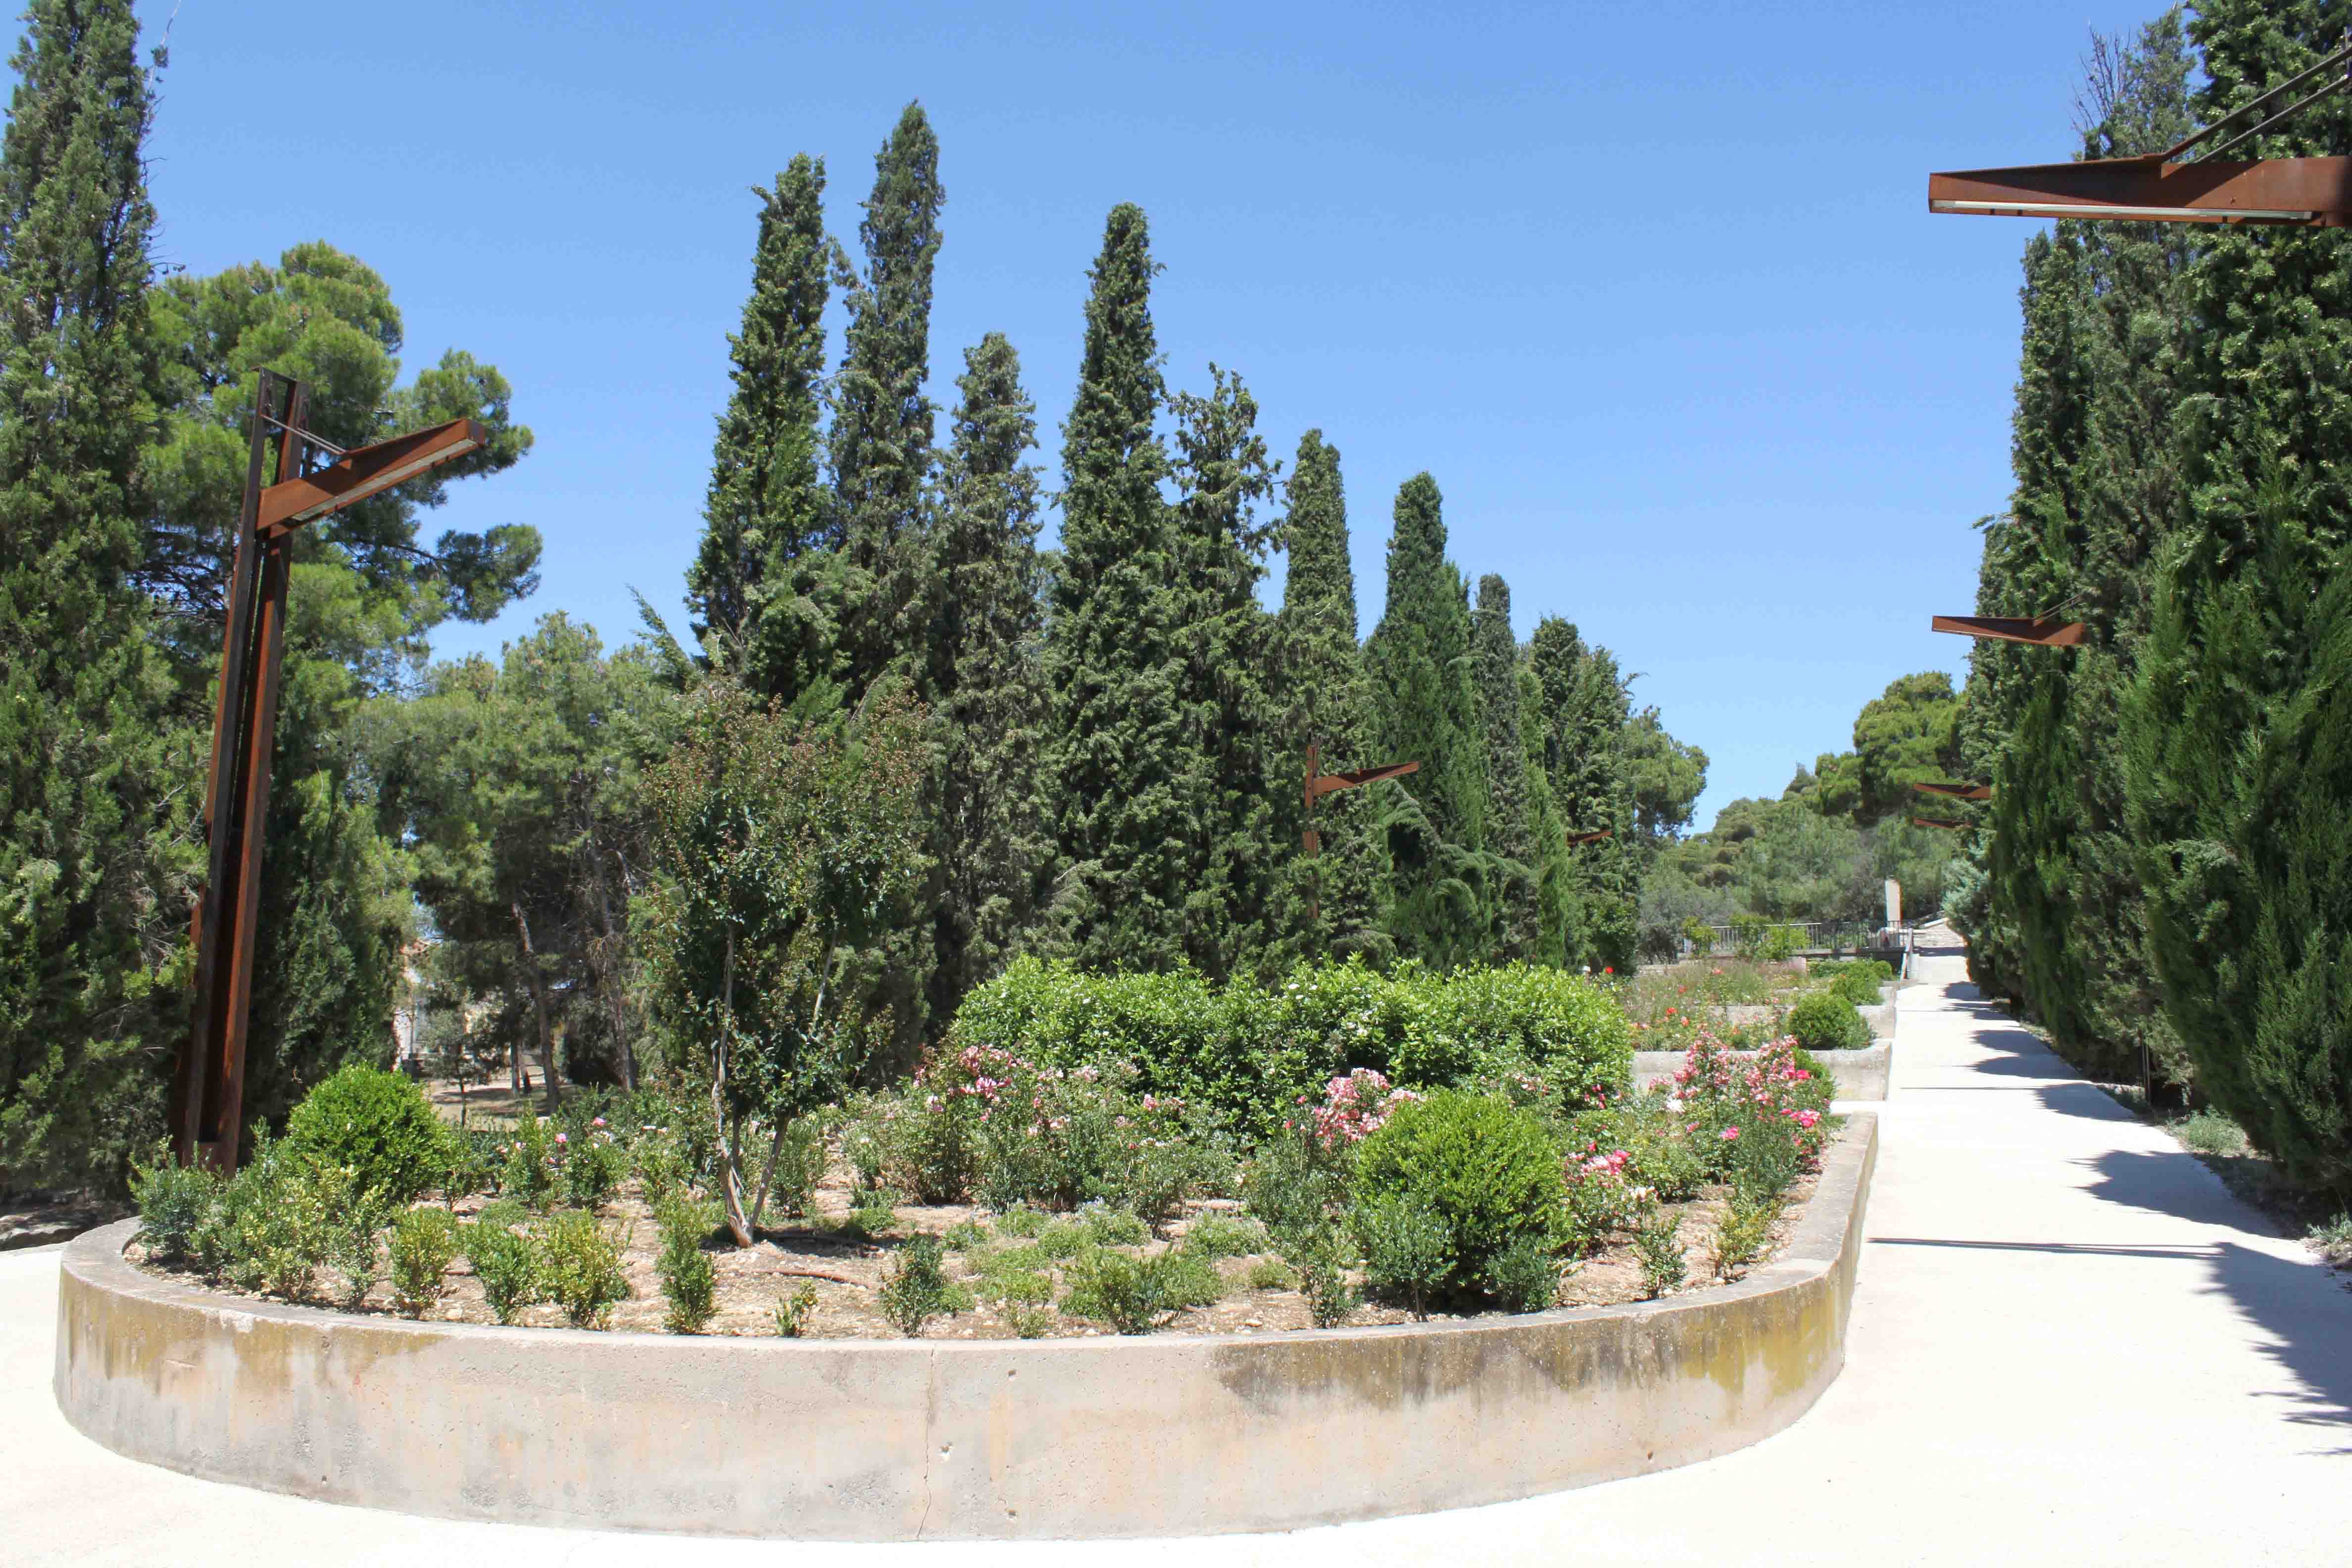 L’Ajuntament de Tàrrega adjudica els treballs de jardineria del Parc de Sant Eloi a l’Associació Alba